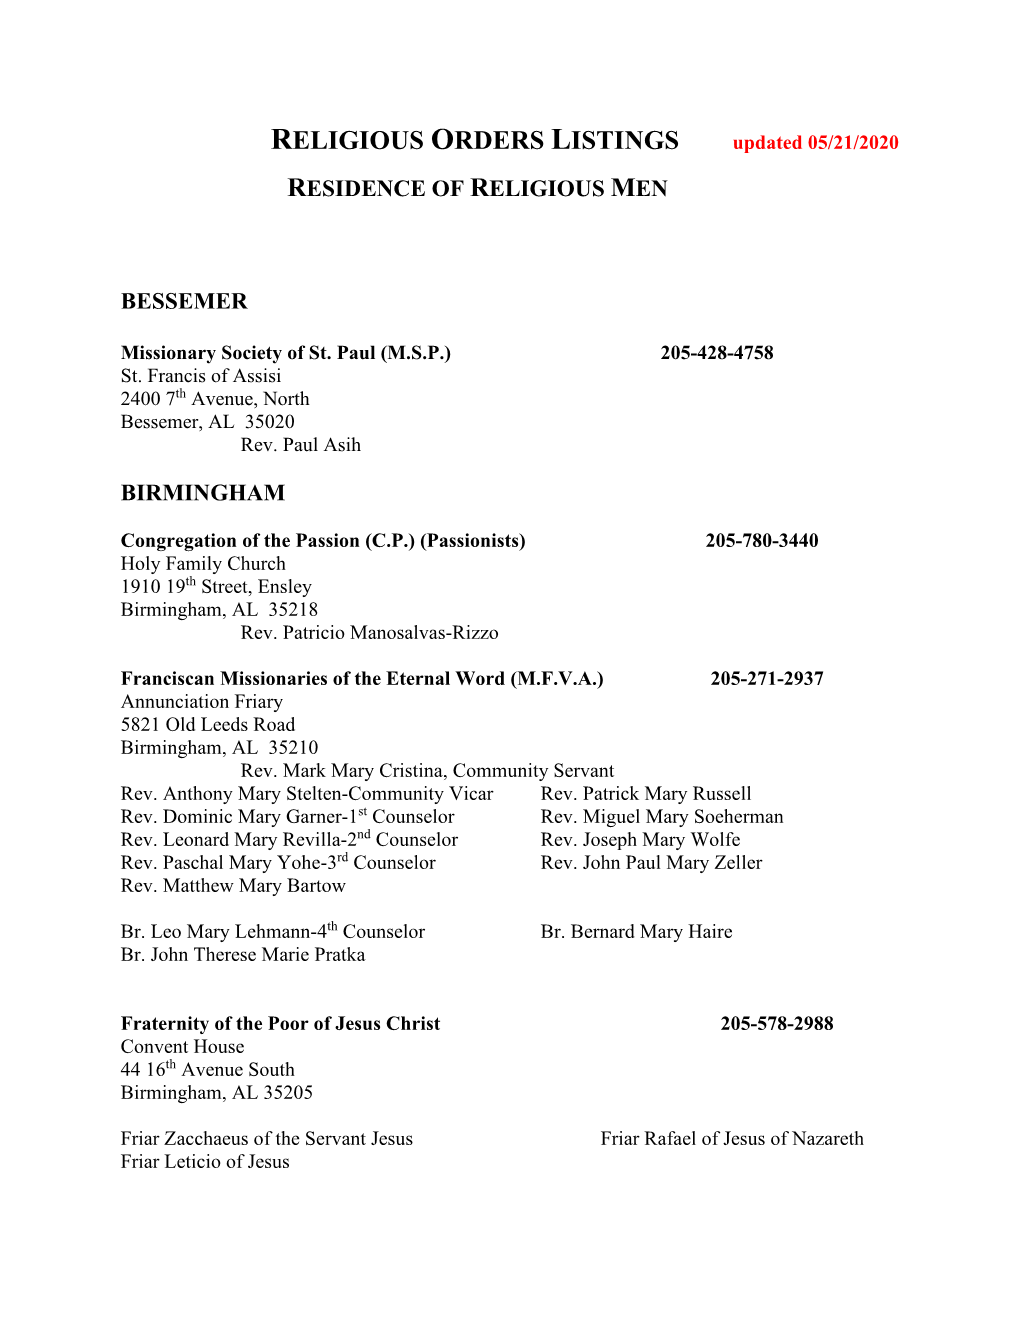 Residence of Religious Men Bessemer Birmingham